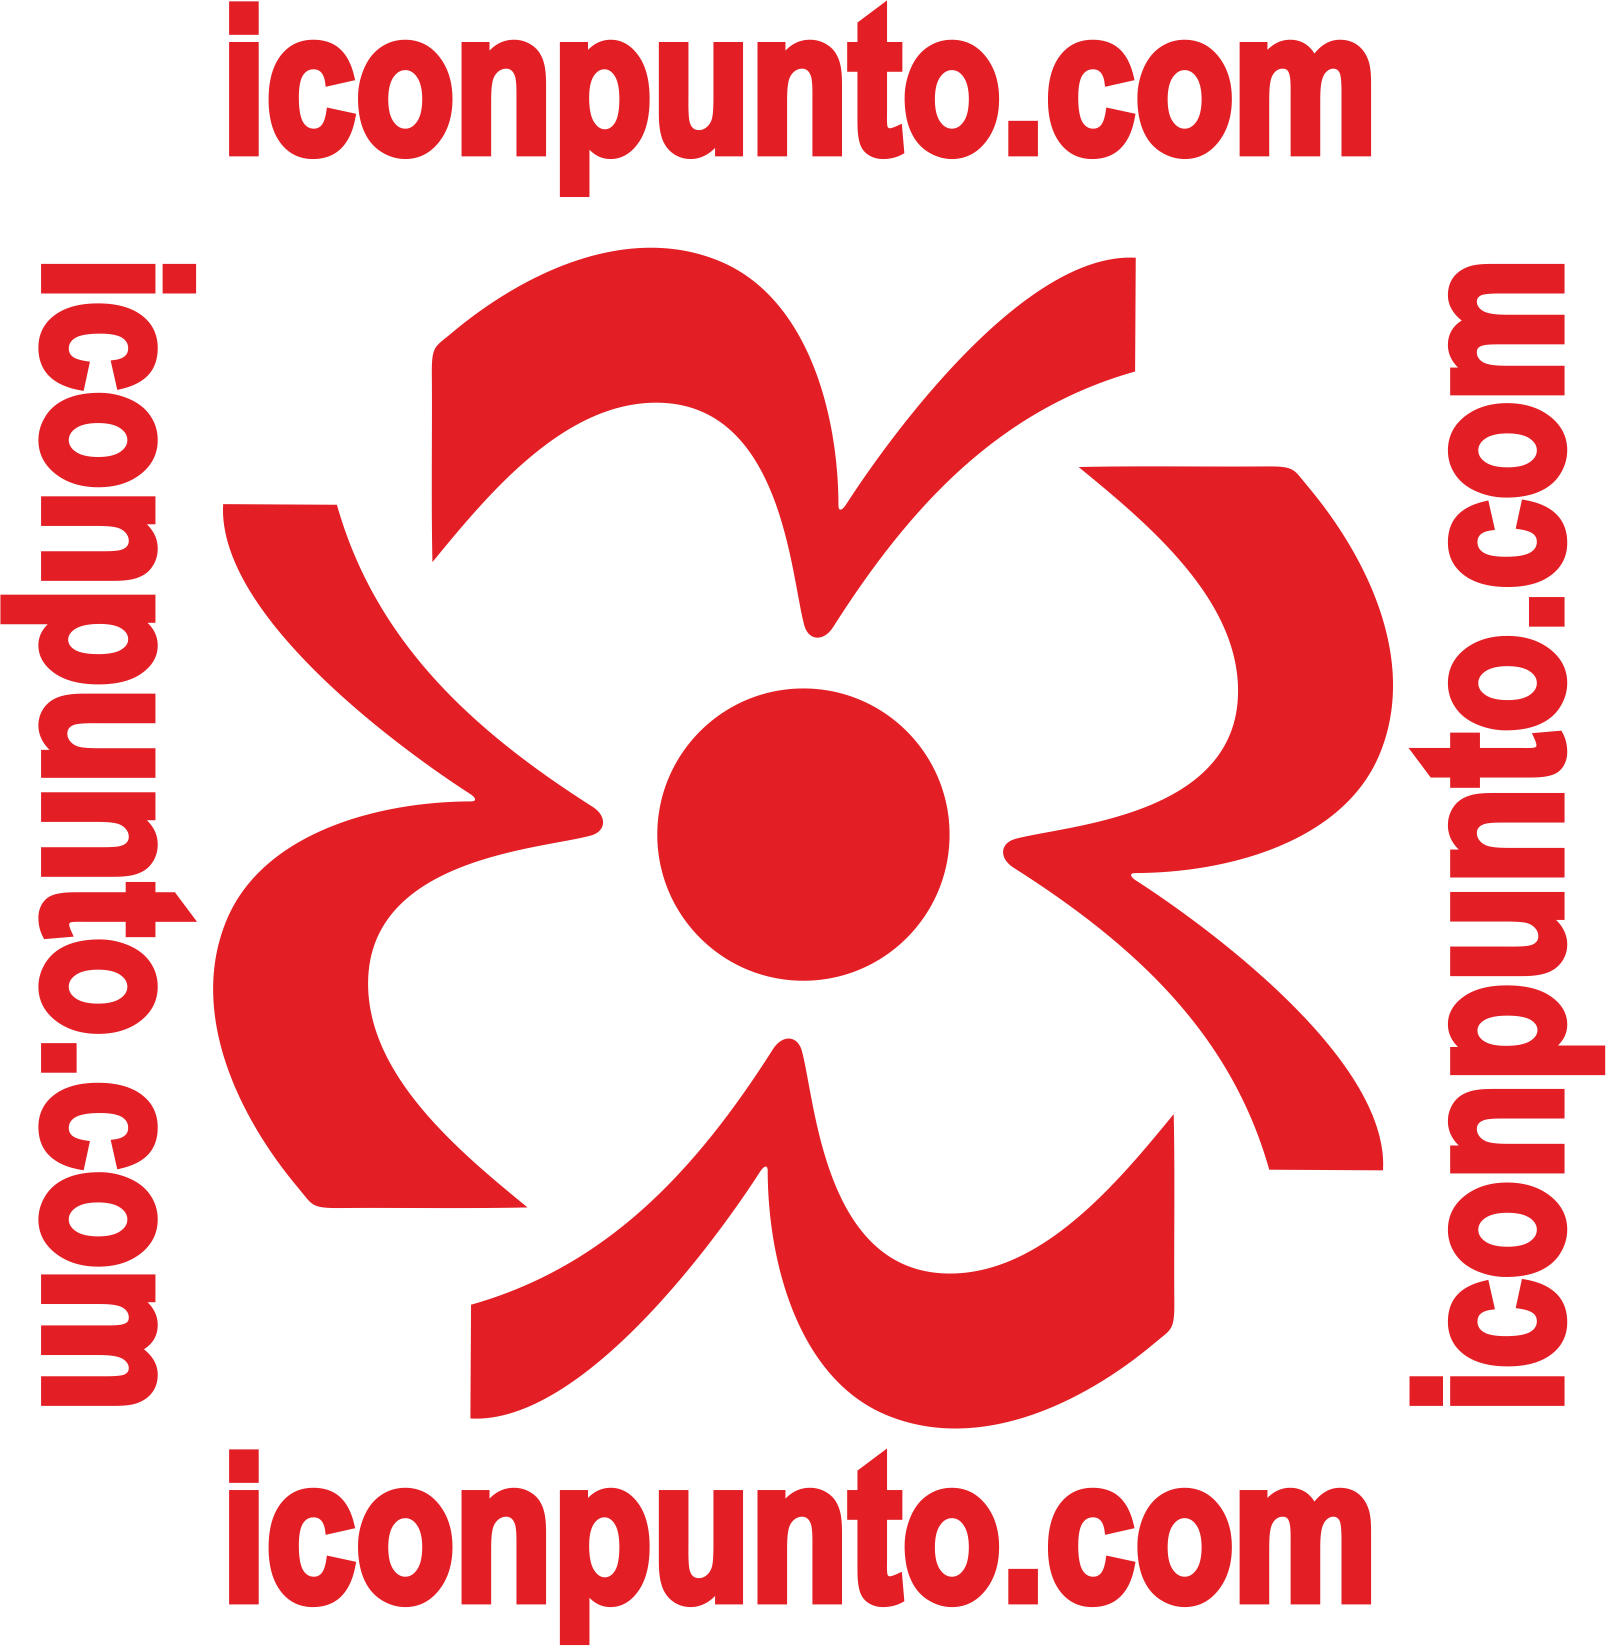 Iconpunto – ahora online!!